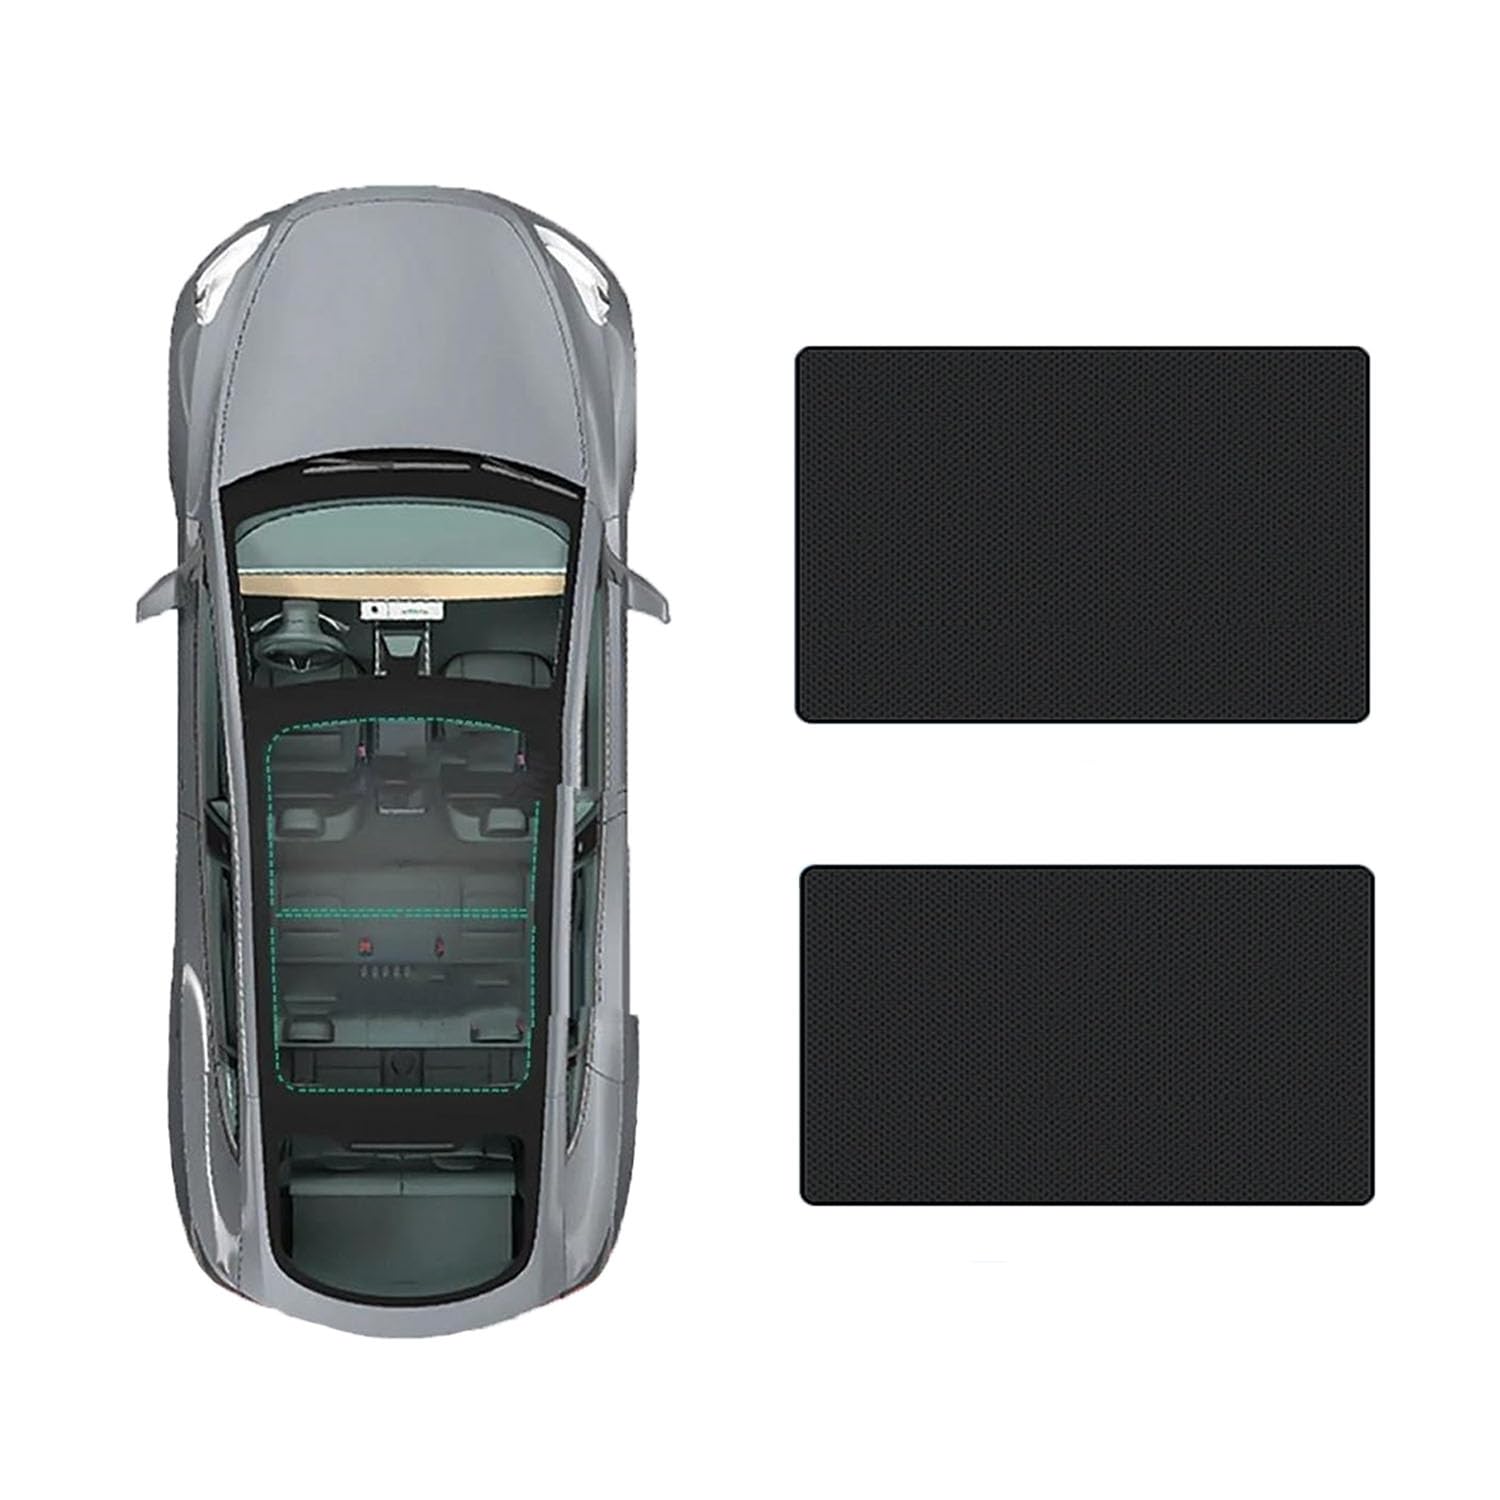 Auto-Schiebedach-Beschattung Für Jaguar XJL 2010-2019,Auto Schiebedach Sonnenschutz Dach Wärme Isolierung Beschattung Innen Auto Zubehör,C-Black regular Style von LLL6zzzK